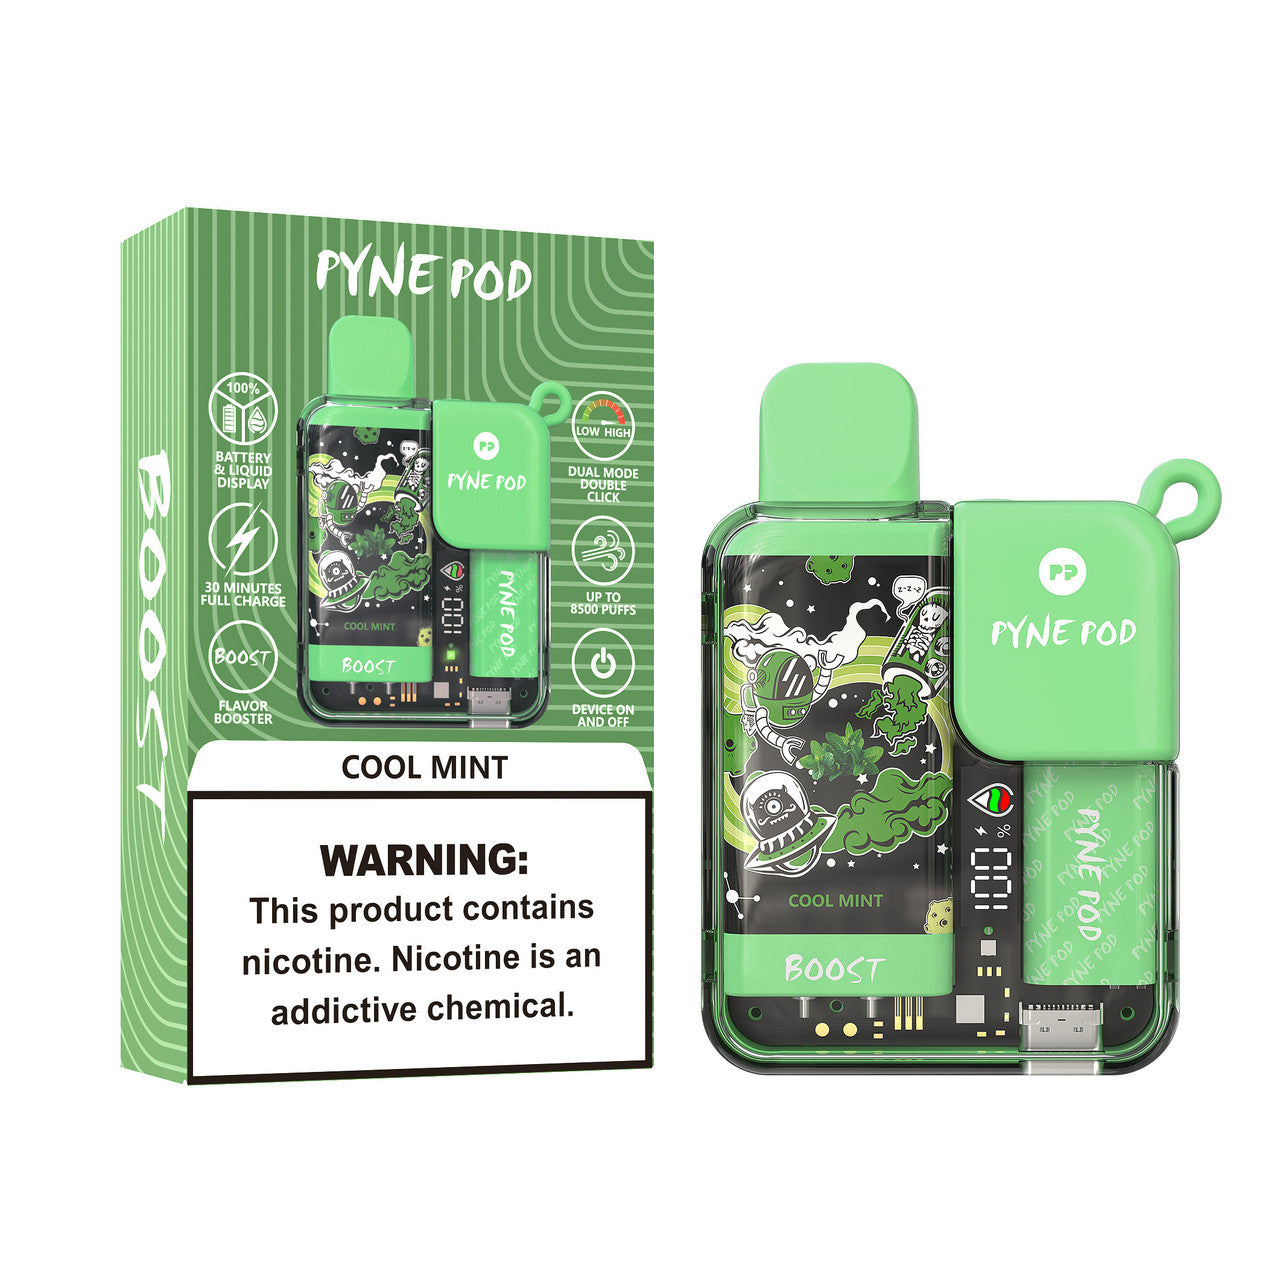 Pyne-Pod-Boost-8500-Cool-Mint-1280x1280-JPG